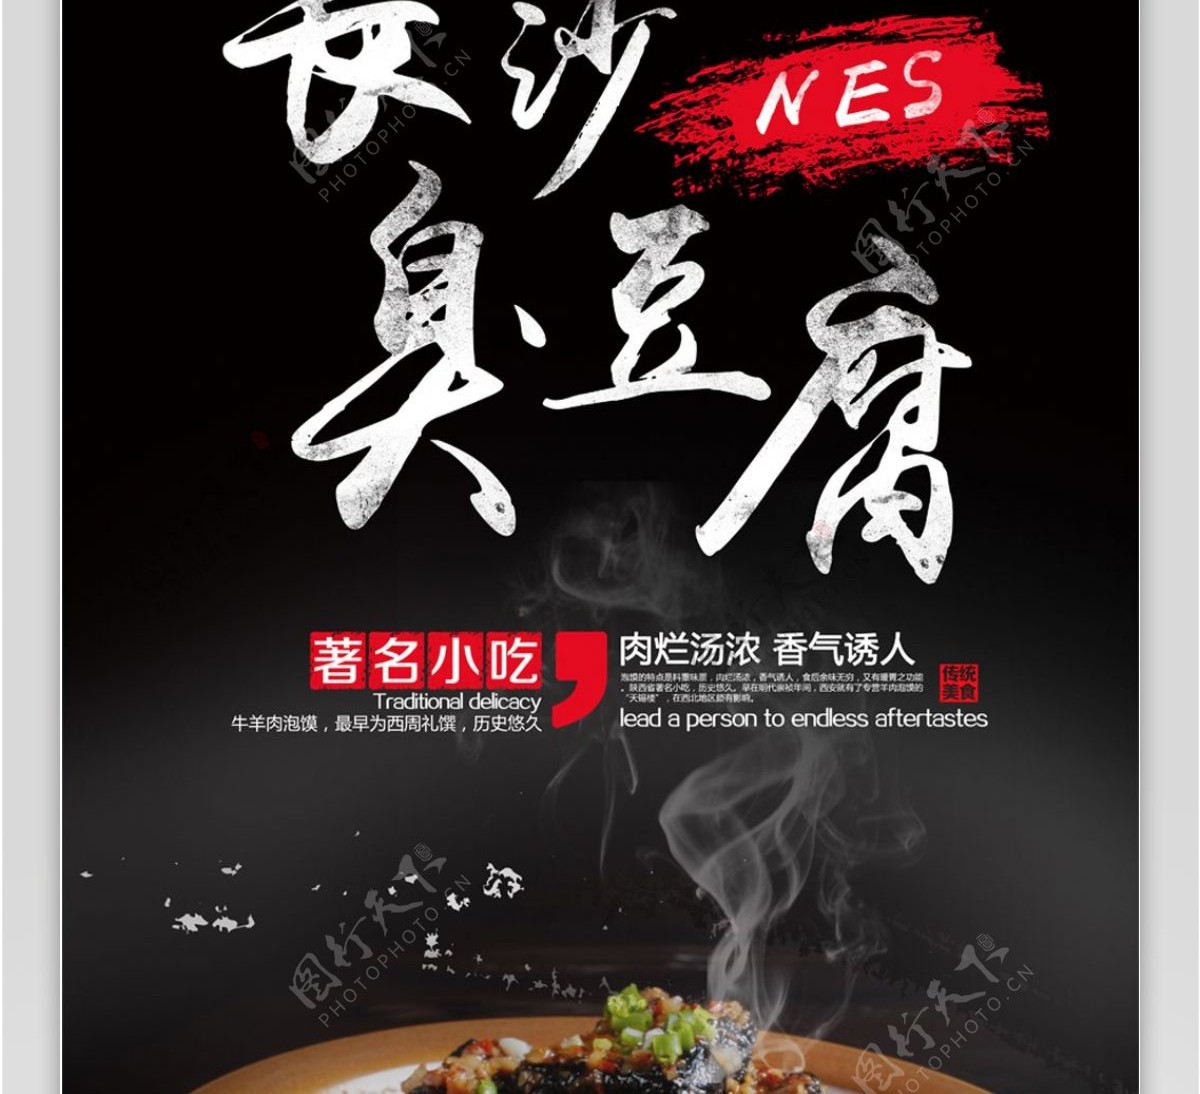 湖南长沙臭豆腐商美食商家促销宣传展架